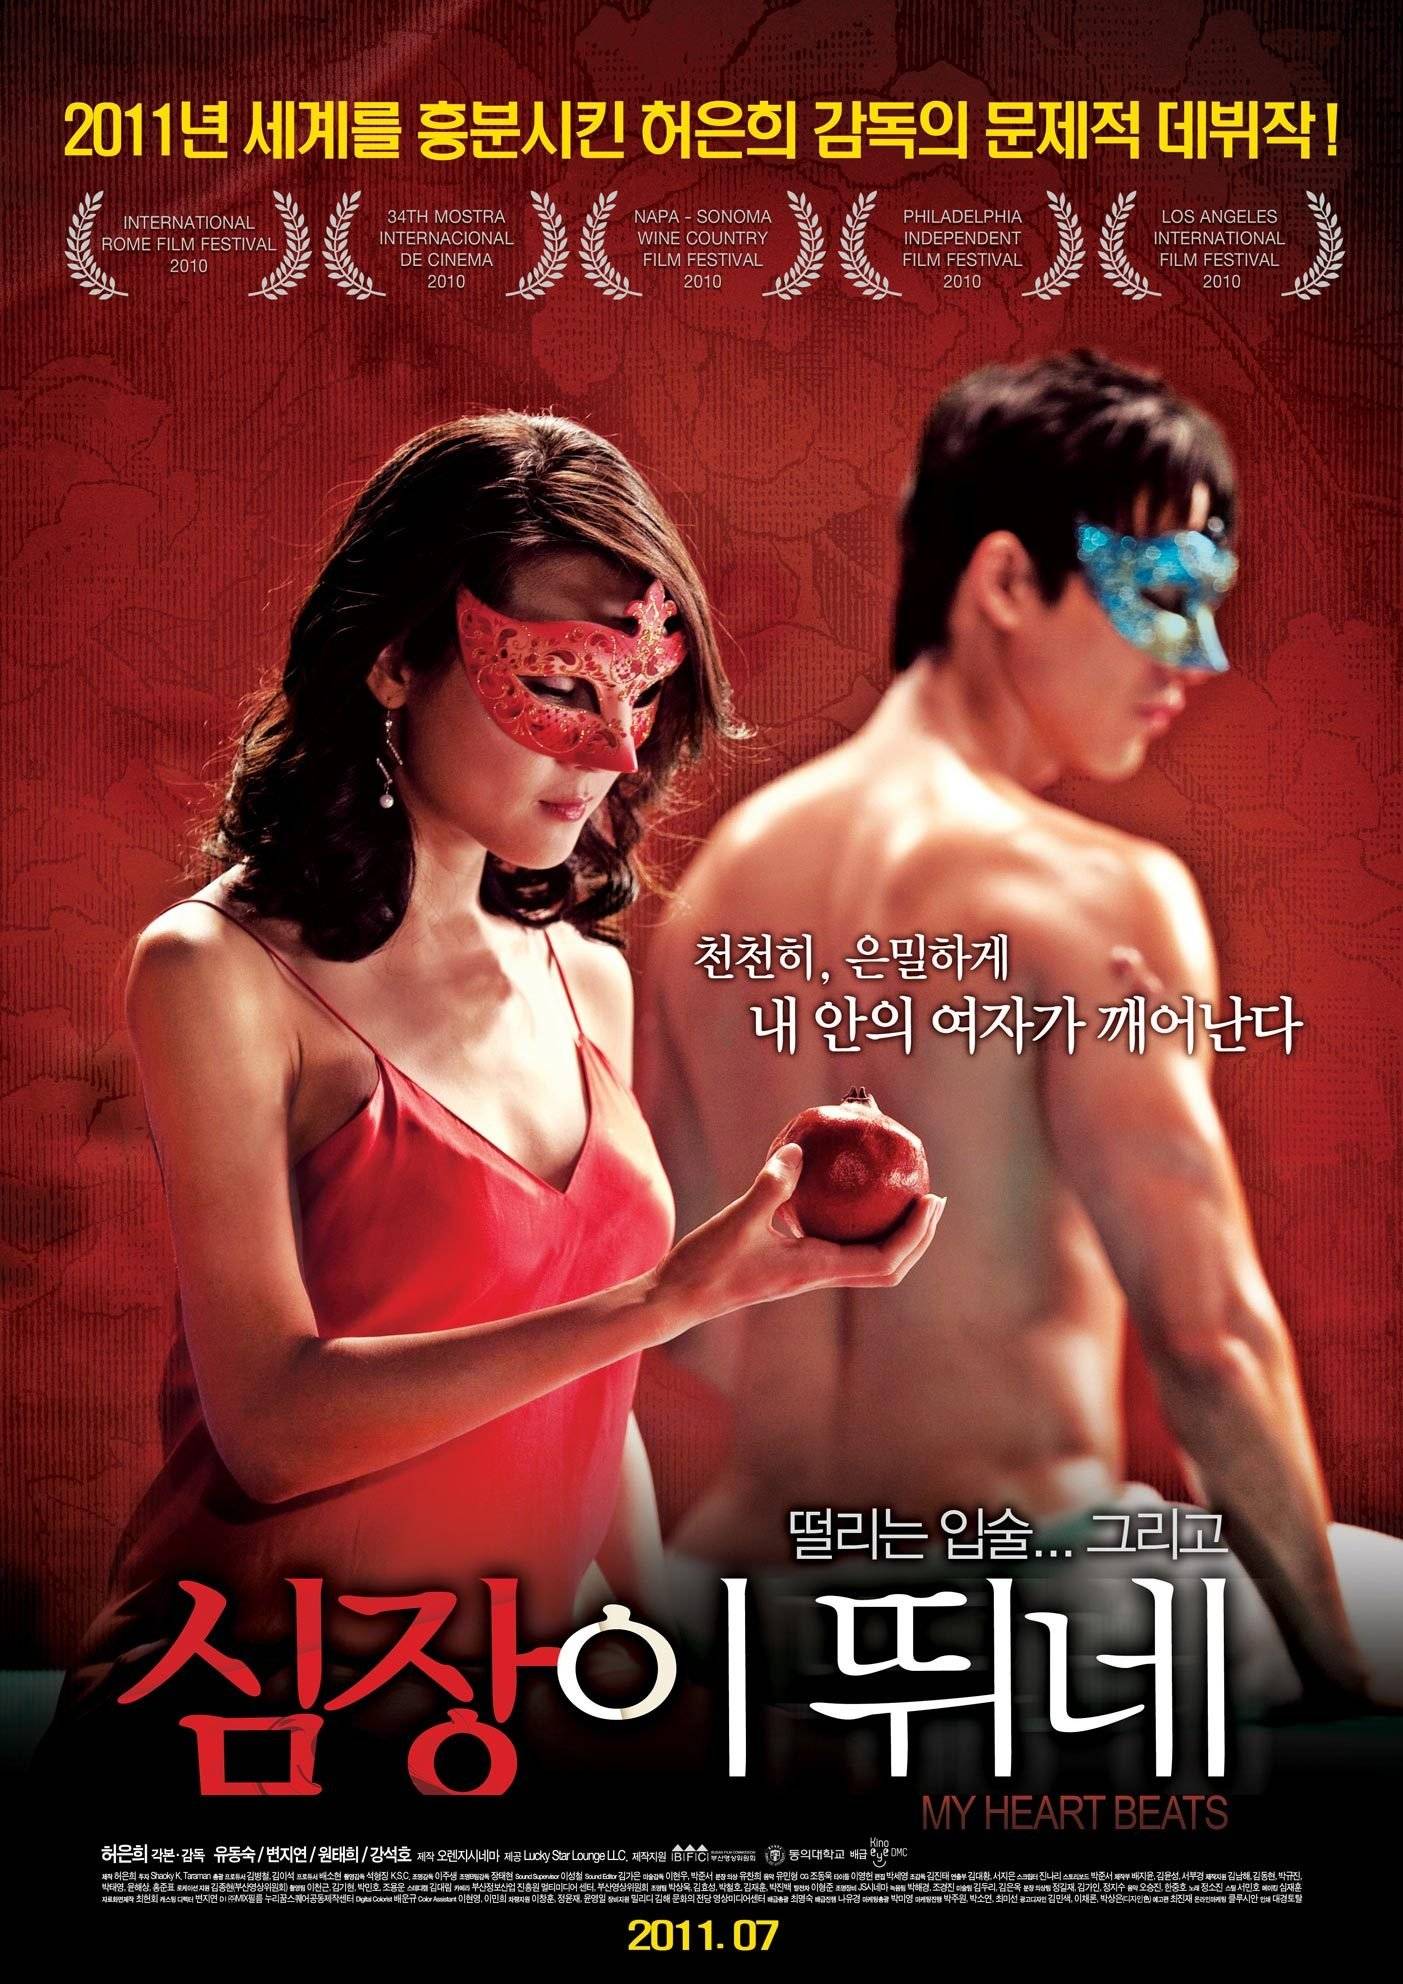 Koreaxxxmovie - Upcoming Korean movie \